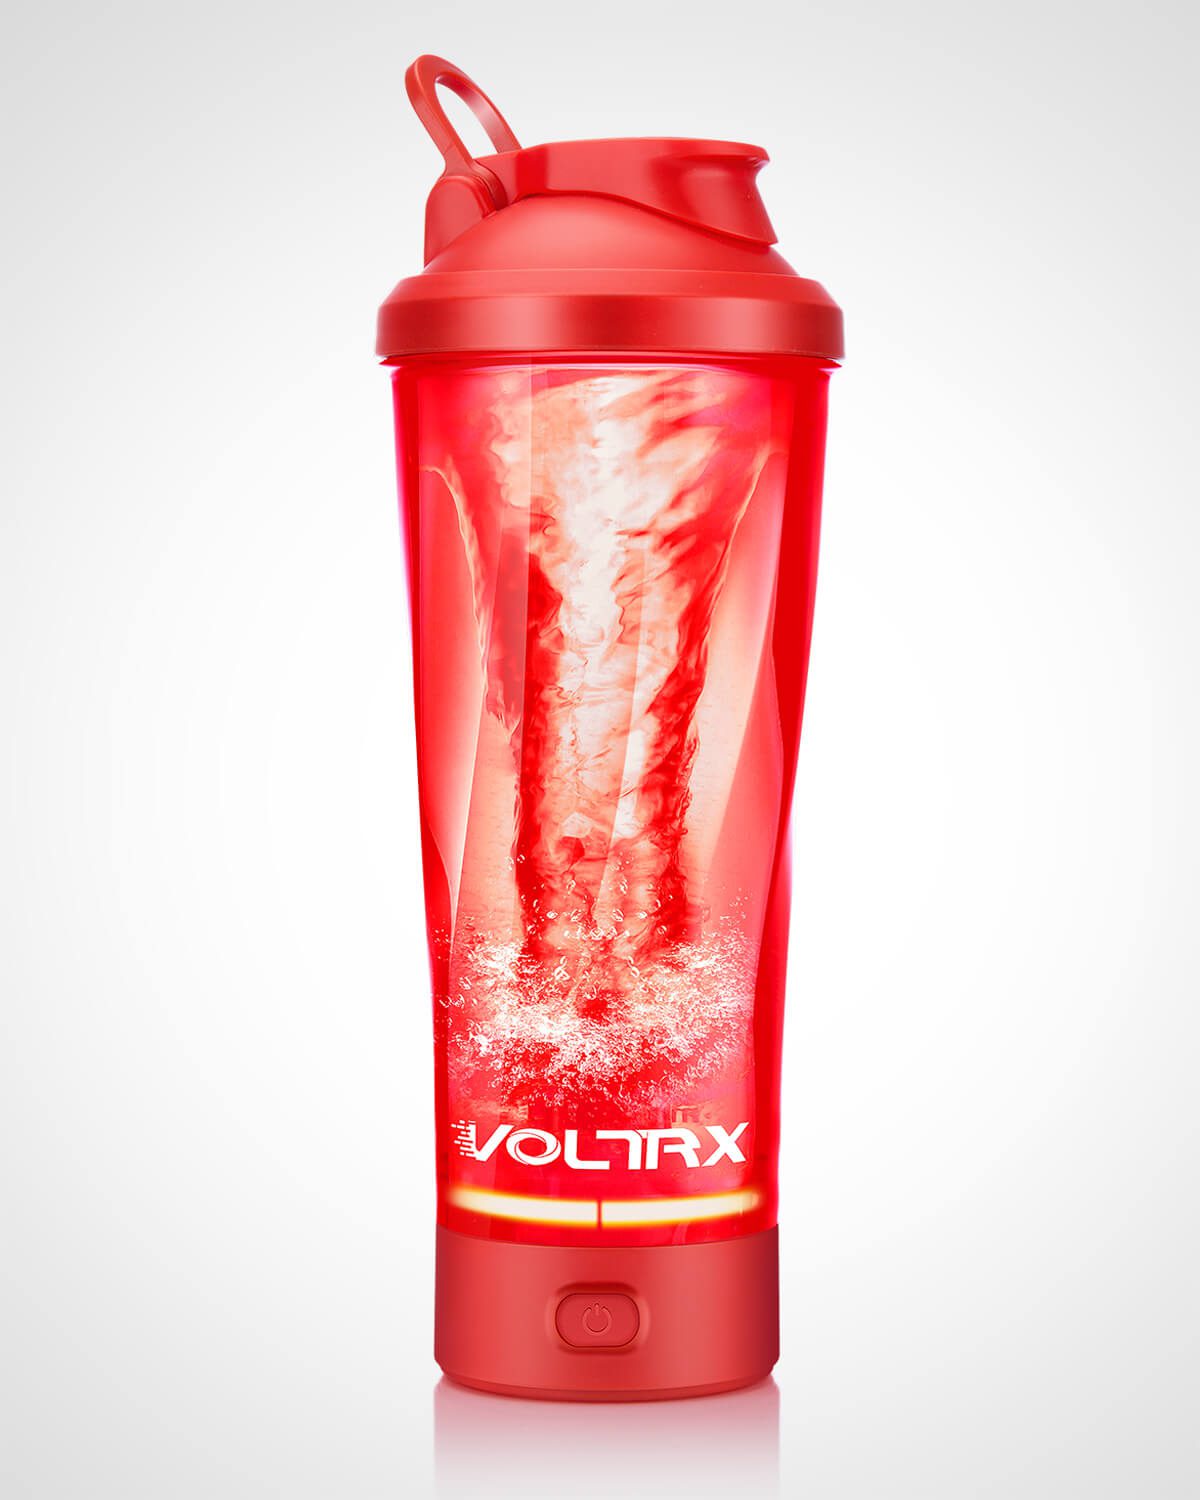 VOLTRX Vortex Electric Protein Shaker Bottle (Red)